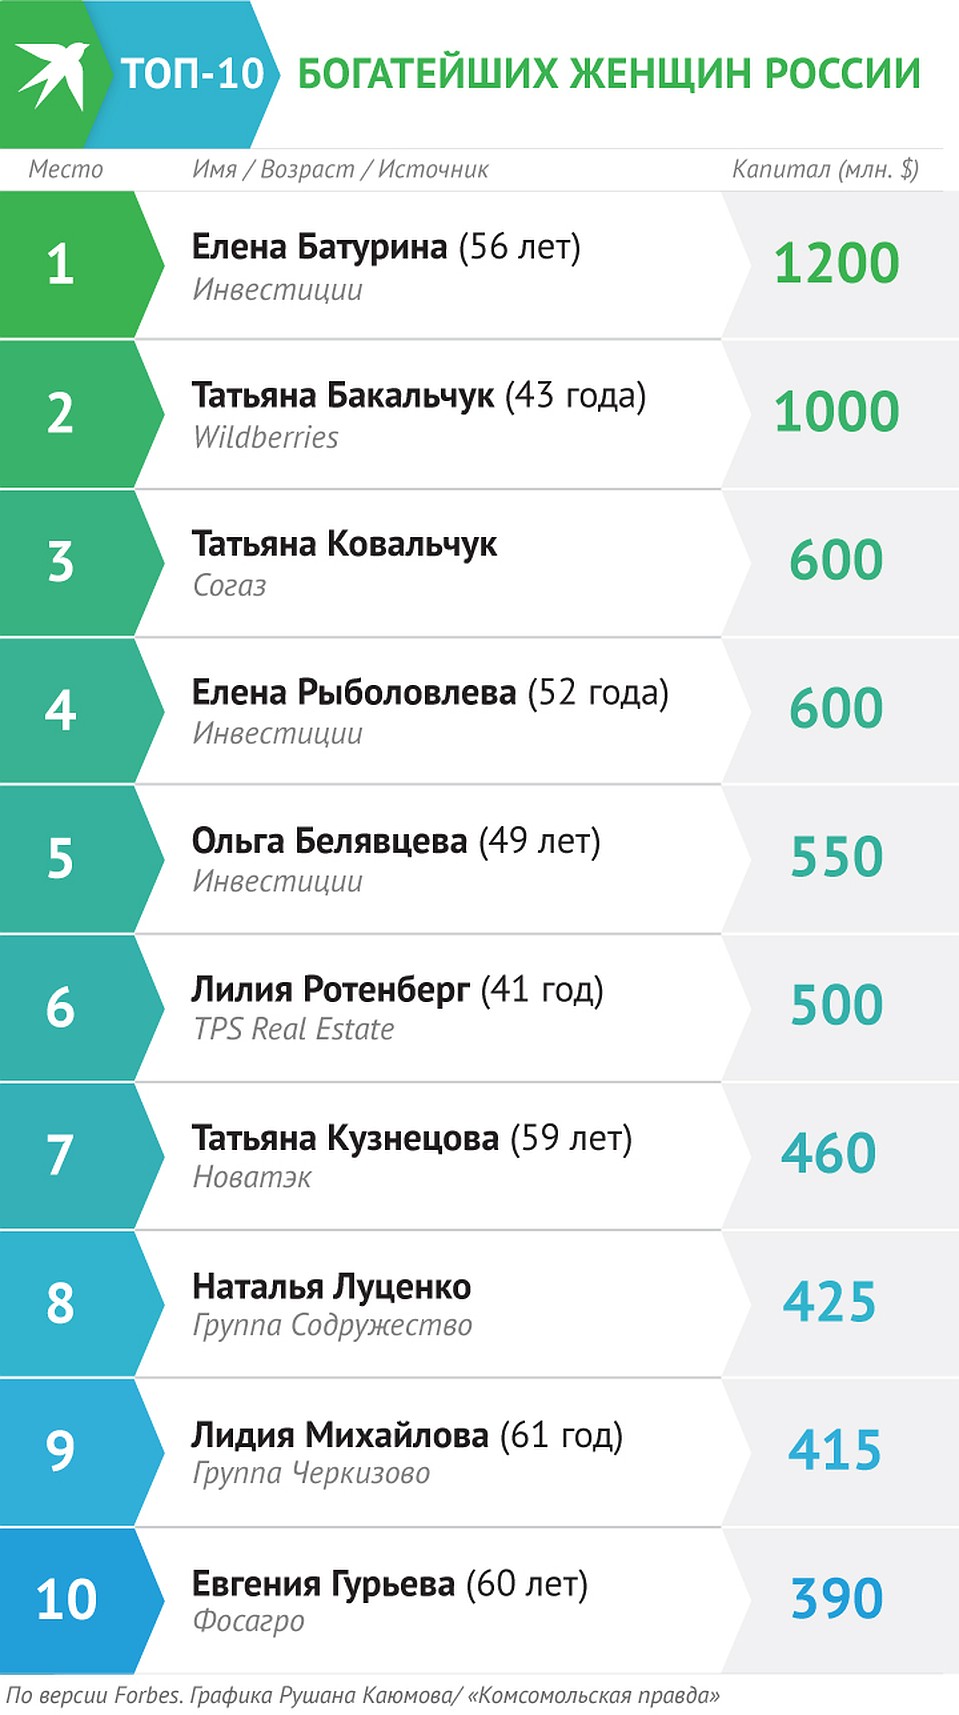 Рейтинг богатейших женщин России по версии Forbes Фото: Рушан КАЮМОВ